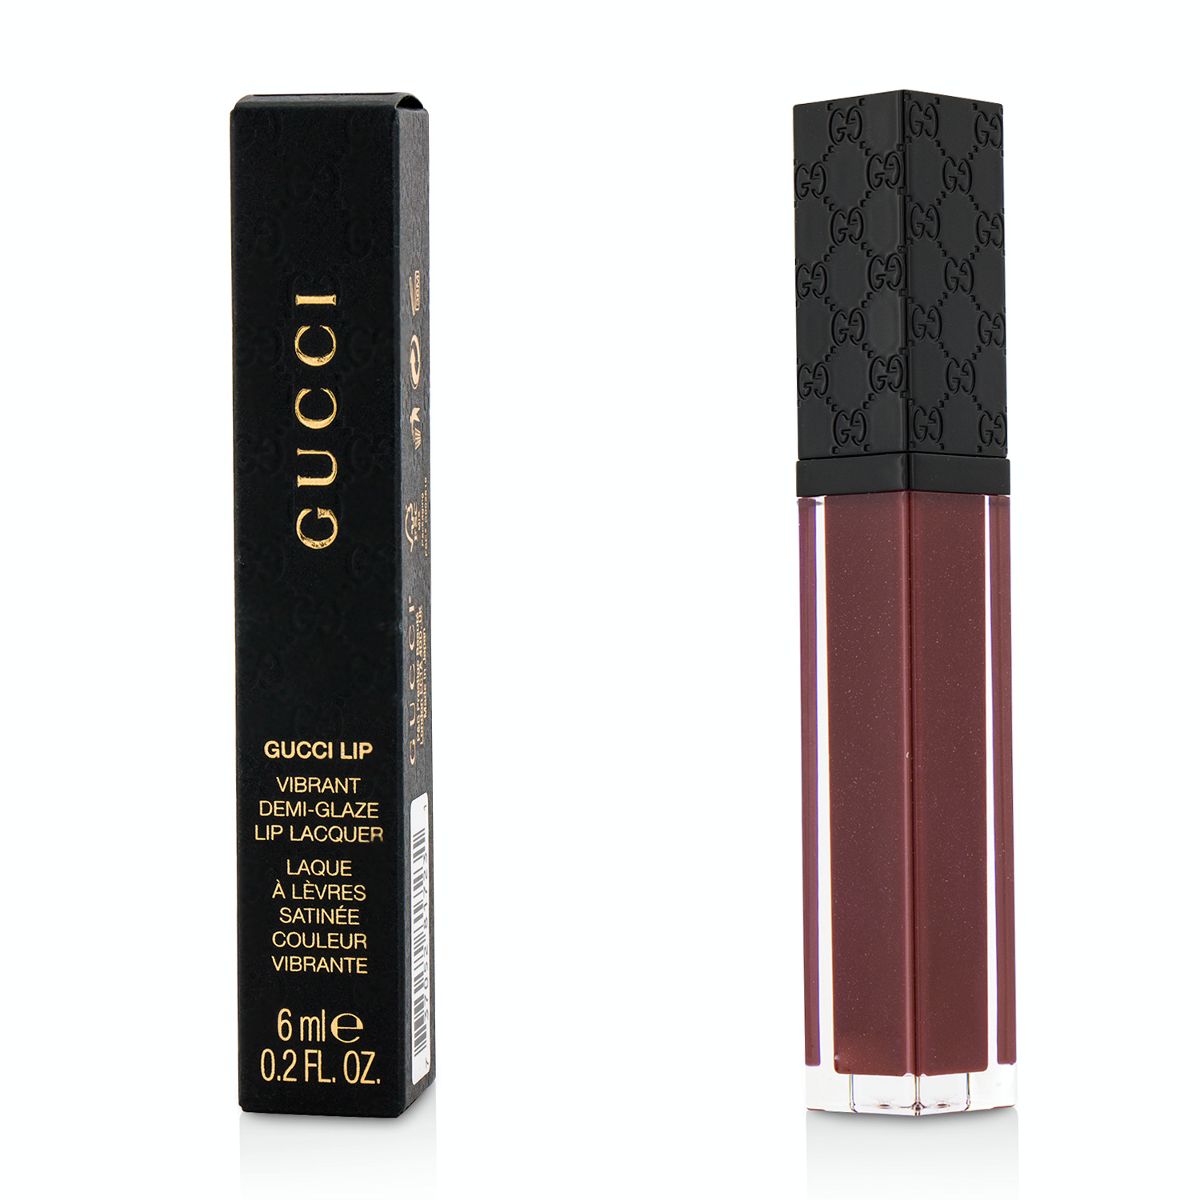 Vibrant Demi Glaze Lip Lacquer - #190 Wild Amarena Gucci Image